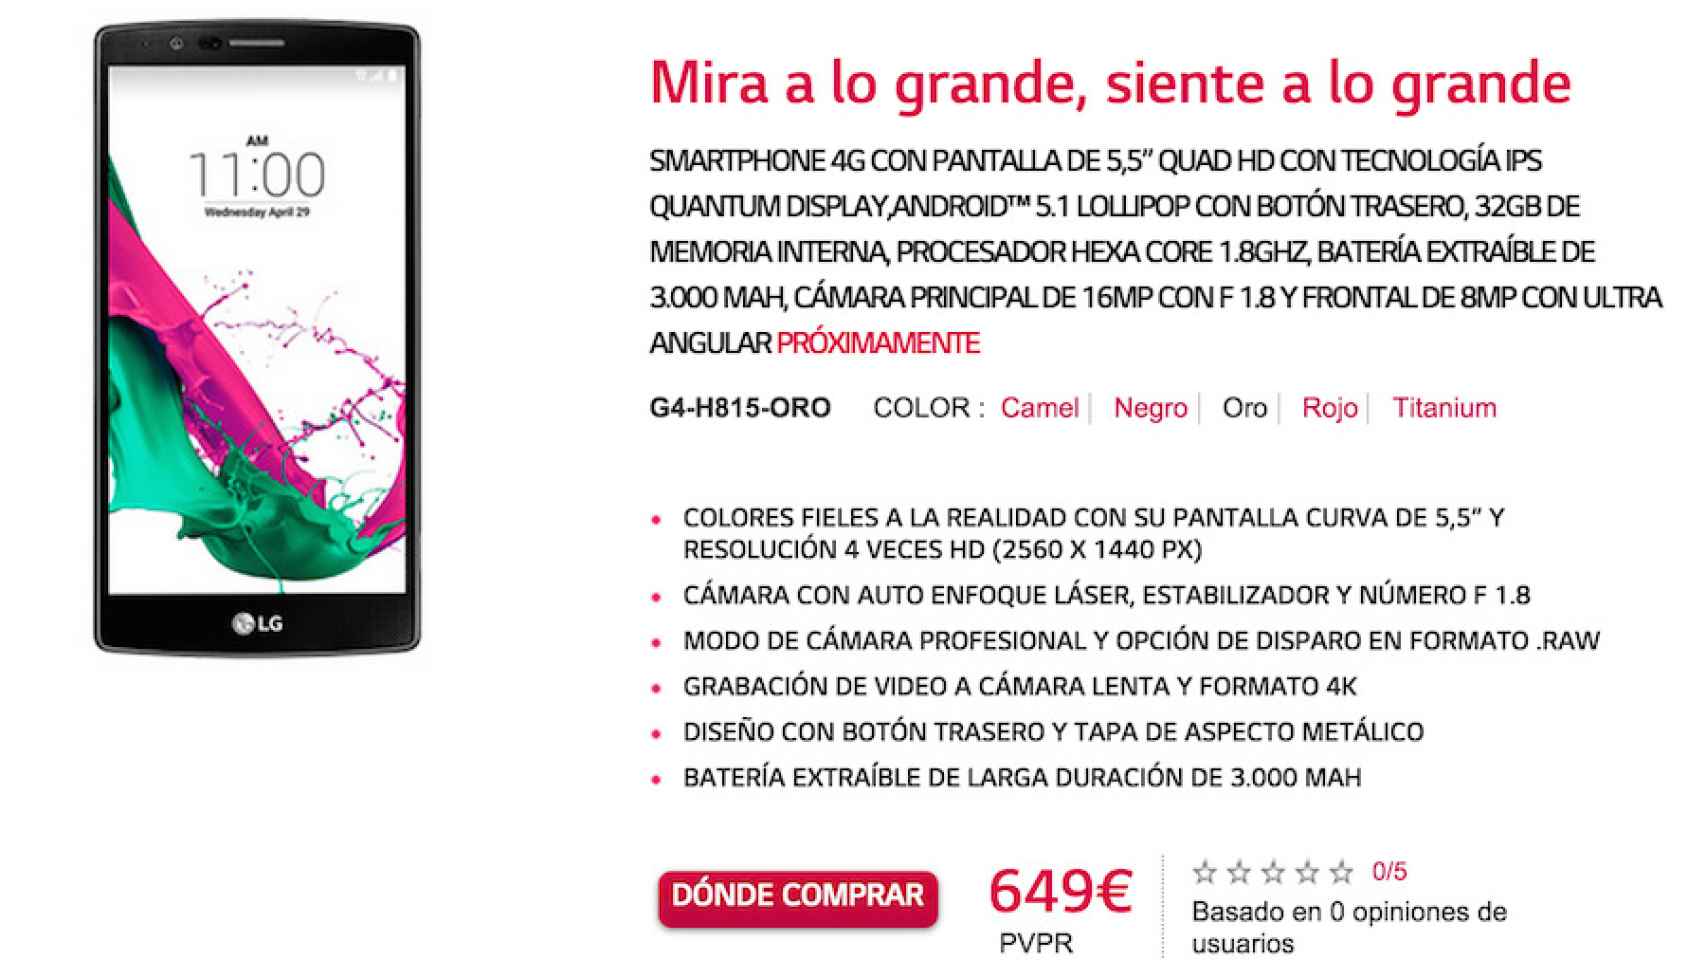 LG G4 se venderá a partir de 649€ en España